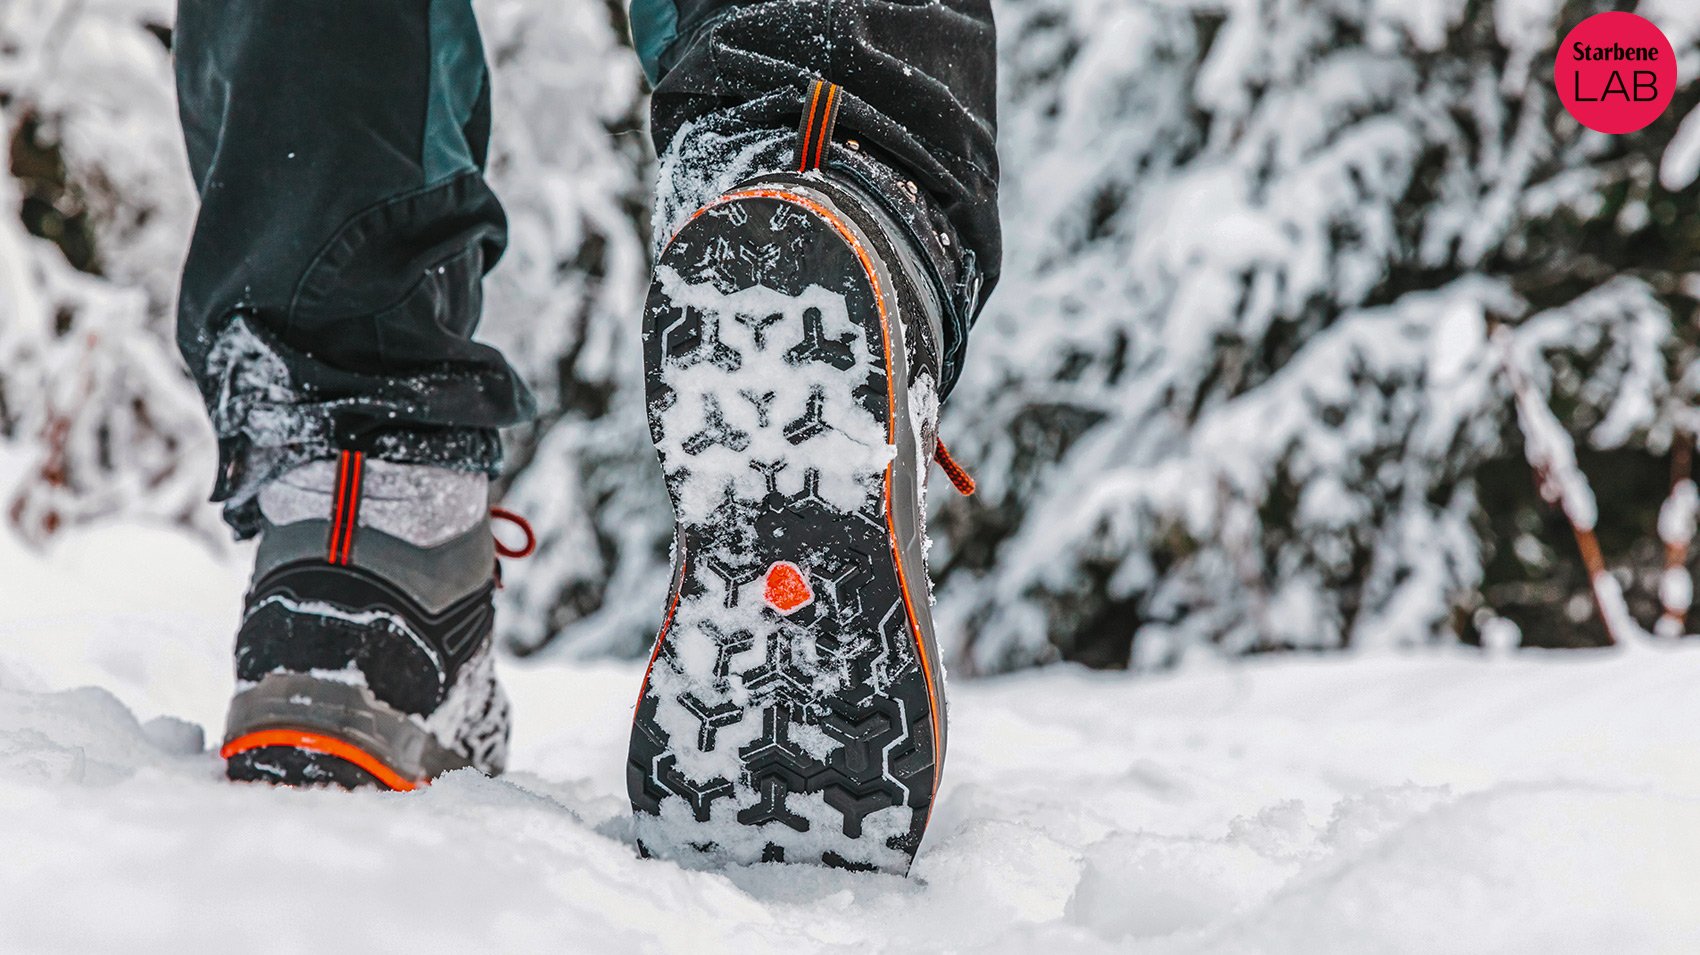 Scarponcini per camminare sulla neve: i migliori 4. Forniscono grip e calore